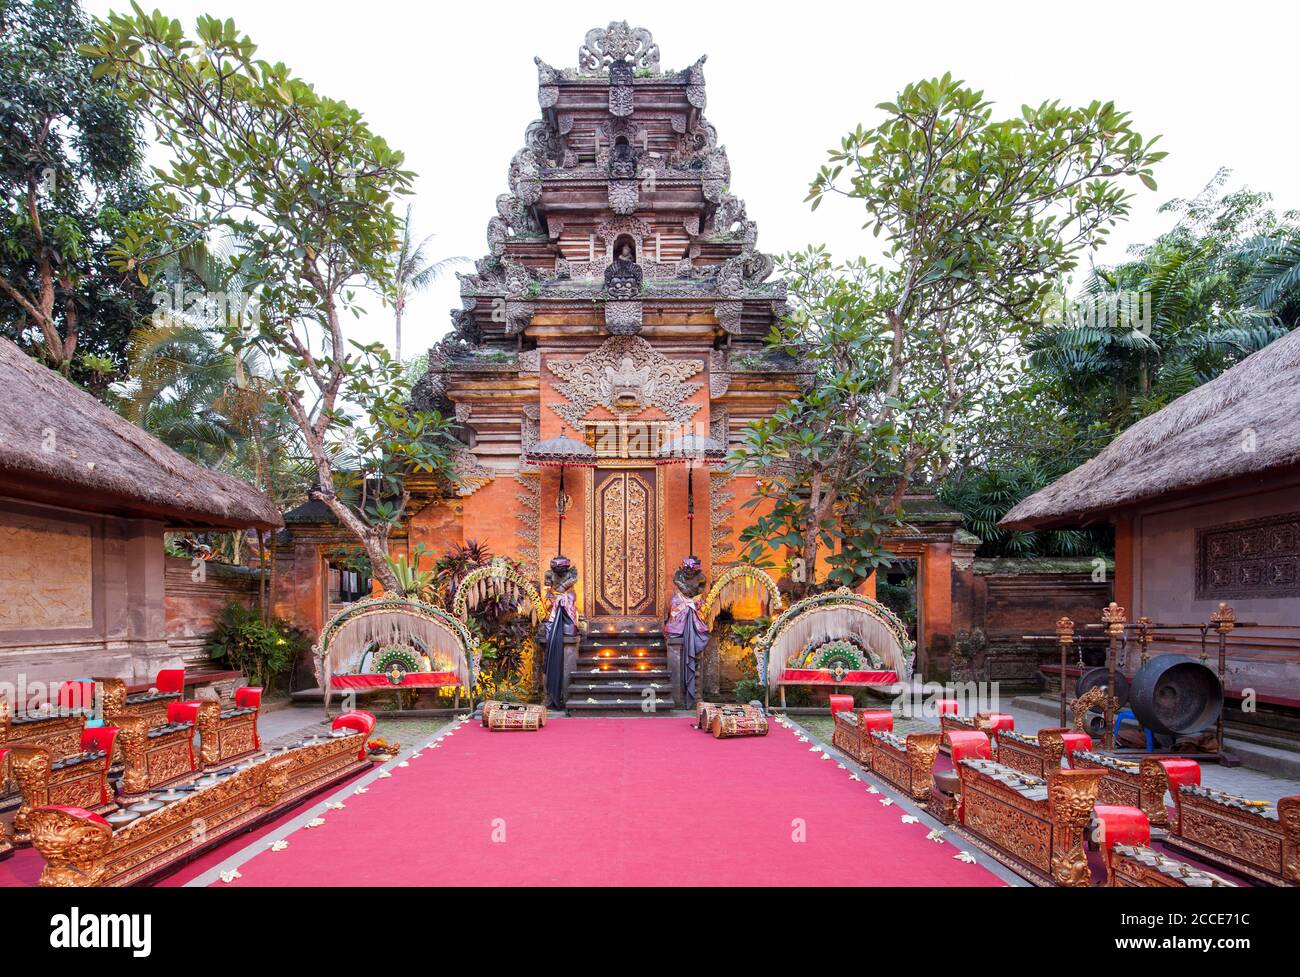 Pura Saren Agung, Princely Palace, Ubud, Bali Stock Photo